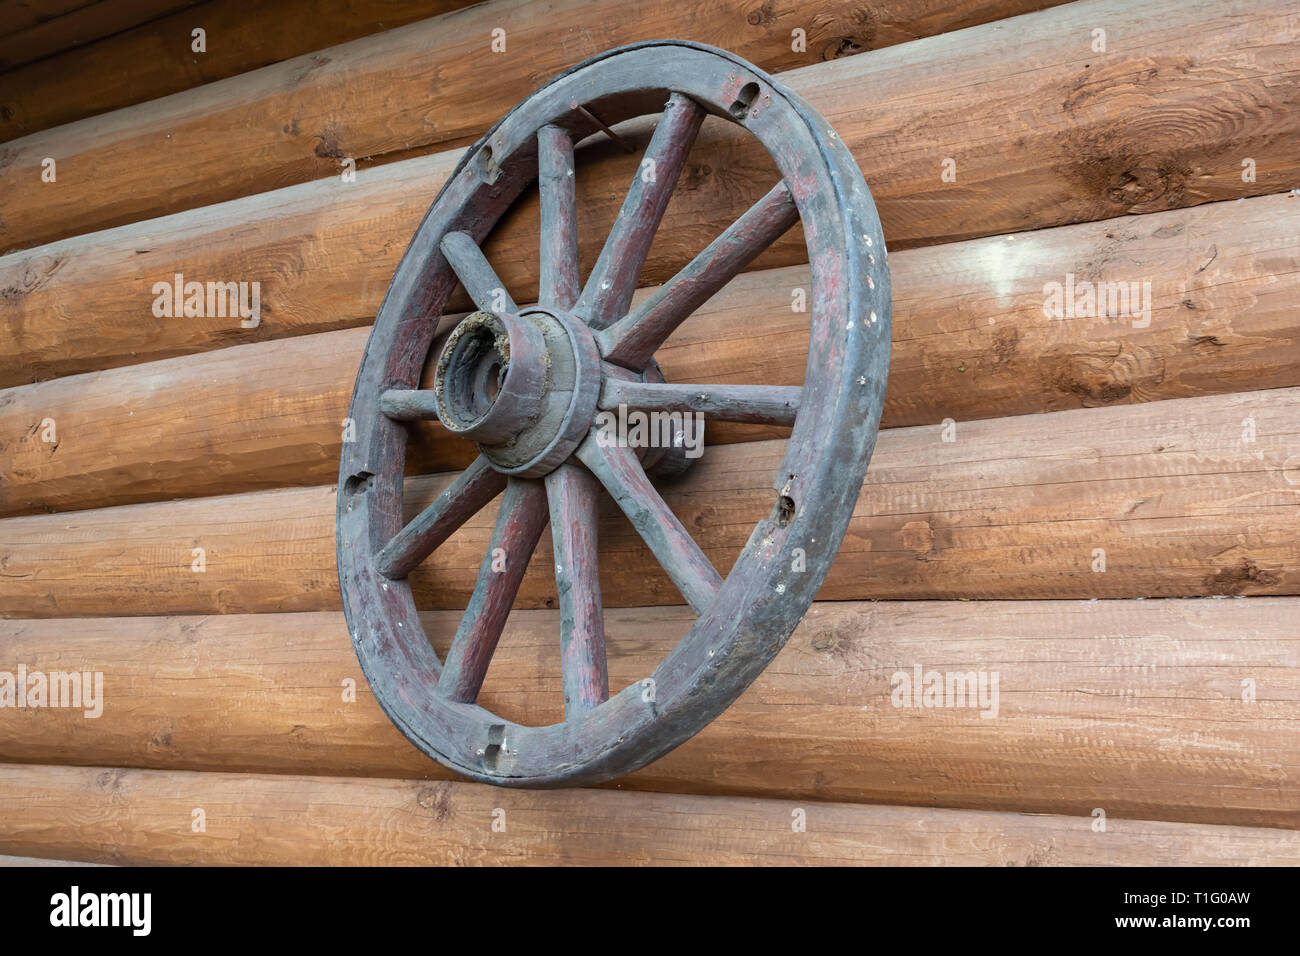 La vieille roue se bloque sur le mur d'une maison en bois rond comme un talisman Banque D'Images